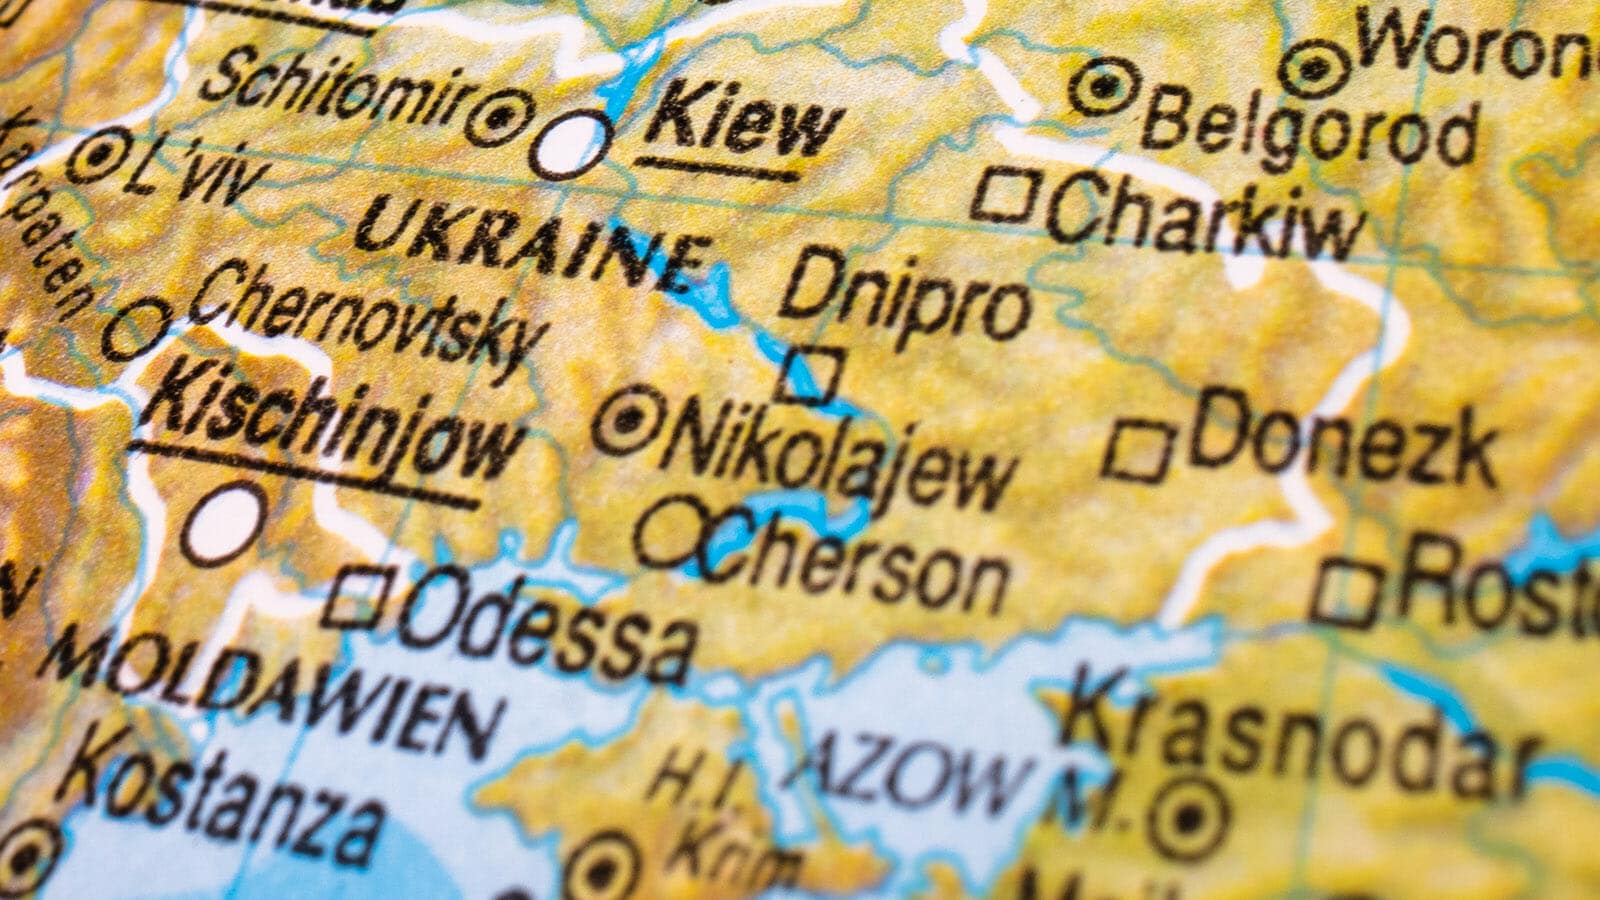 Interaktive Karte zeigt Vorgänge im Ukraine-Krieg / Artikelbild: Unsplash